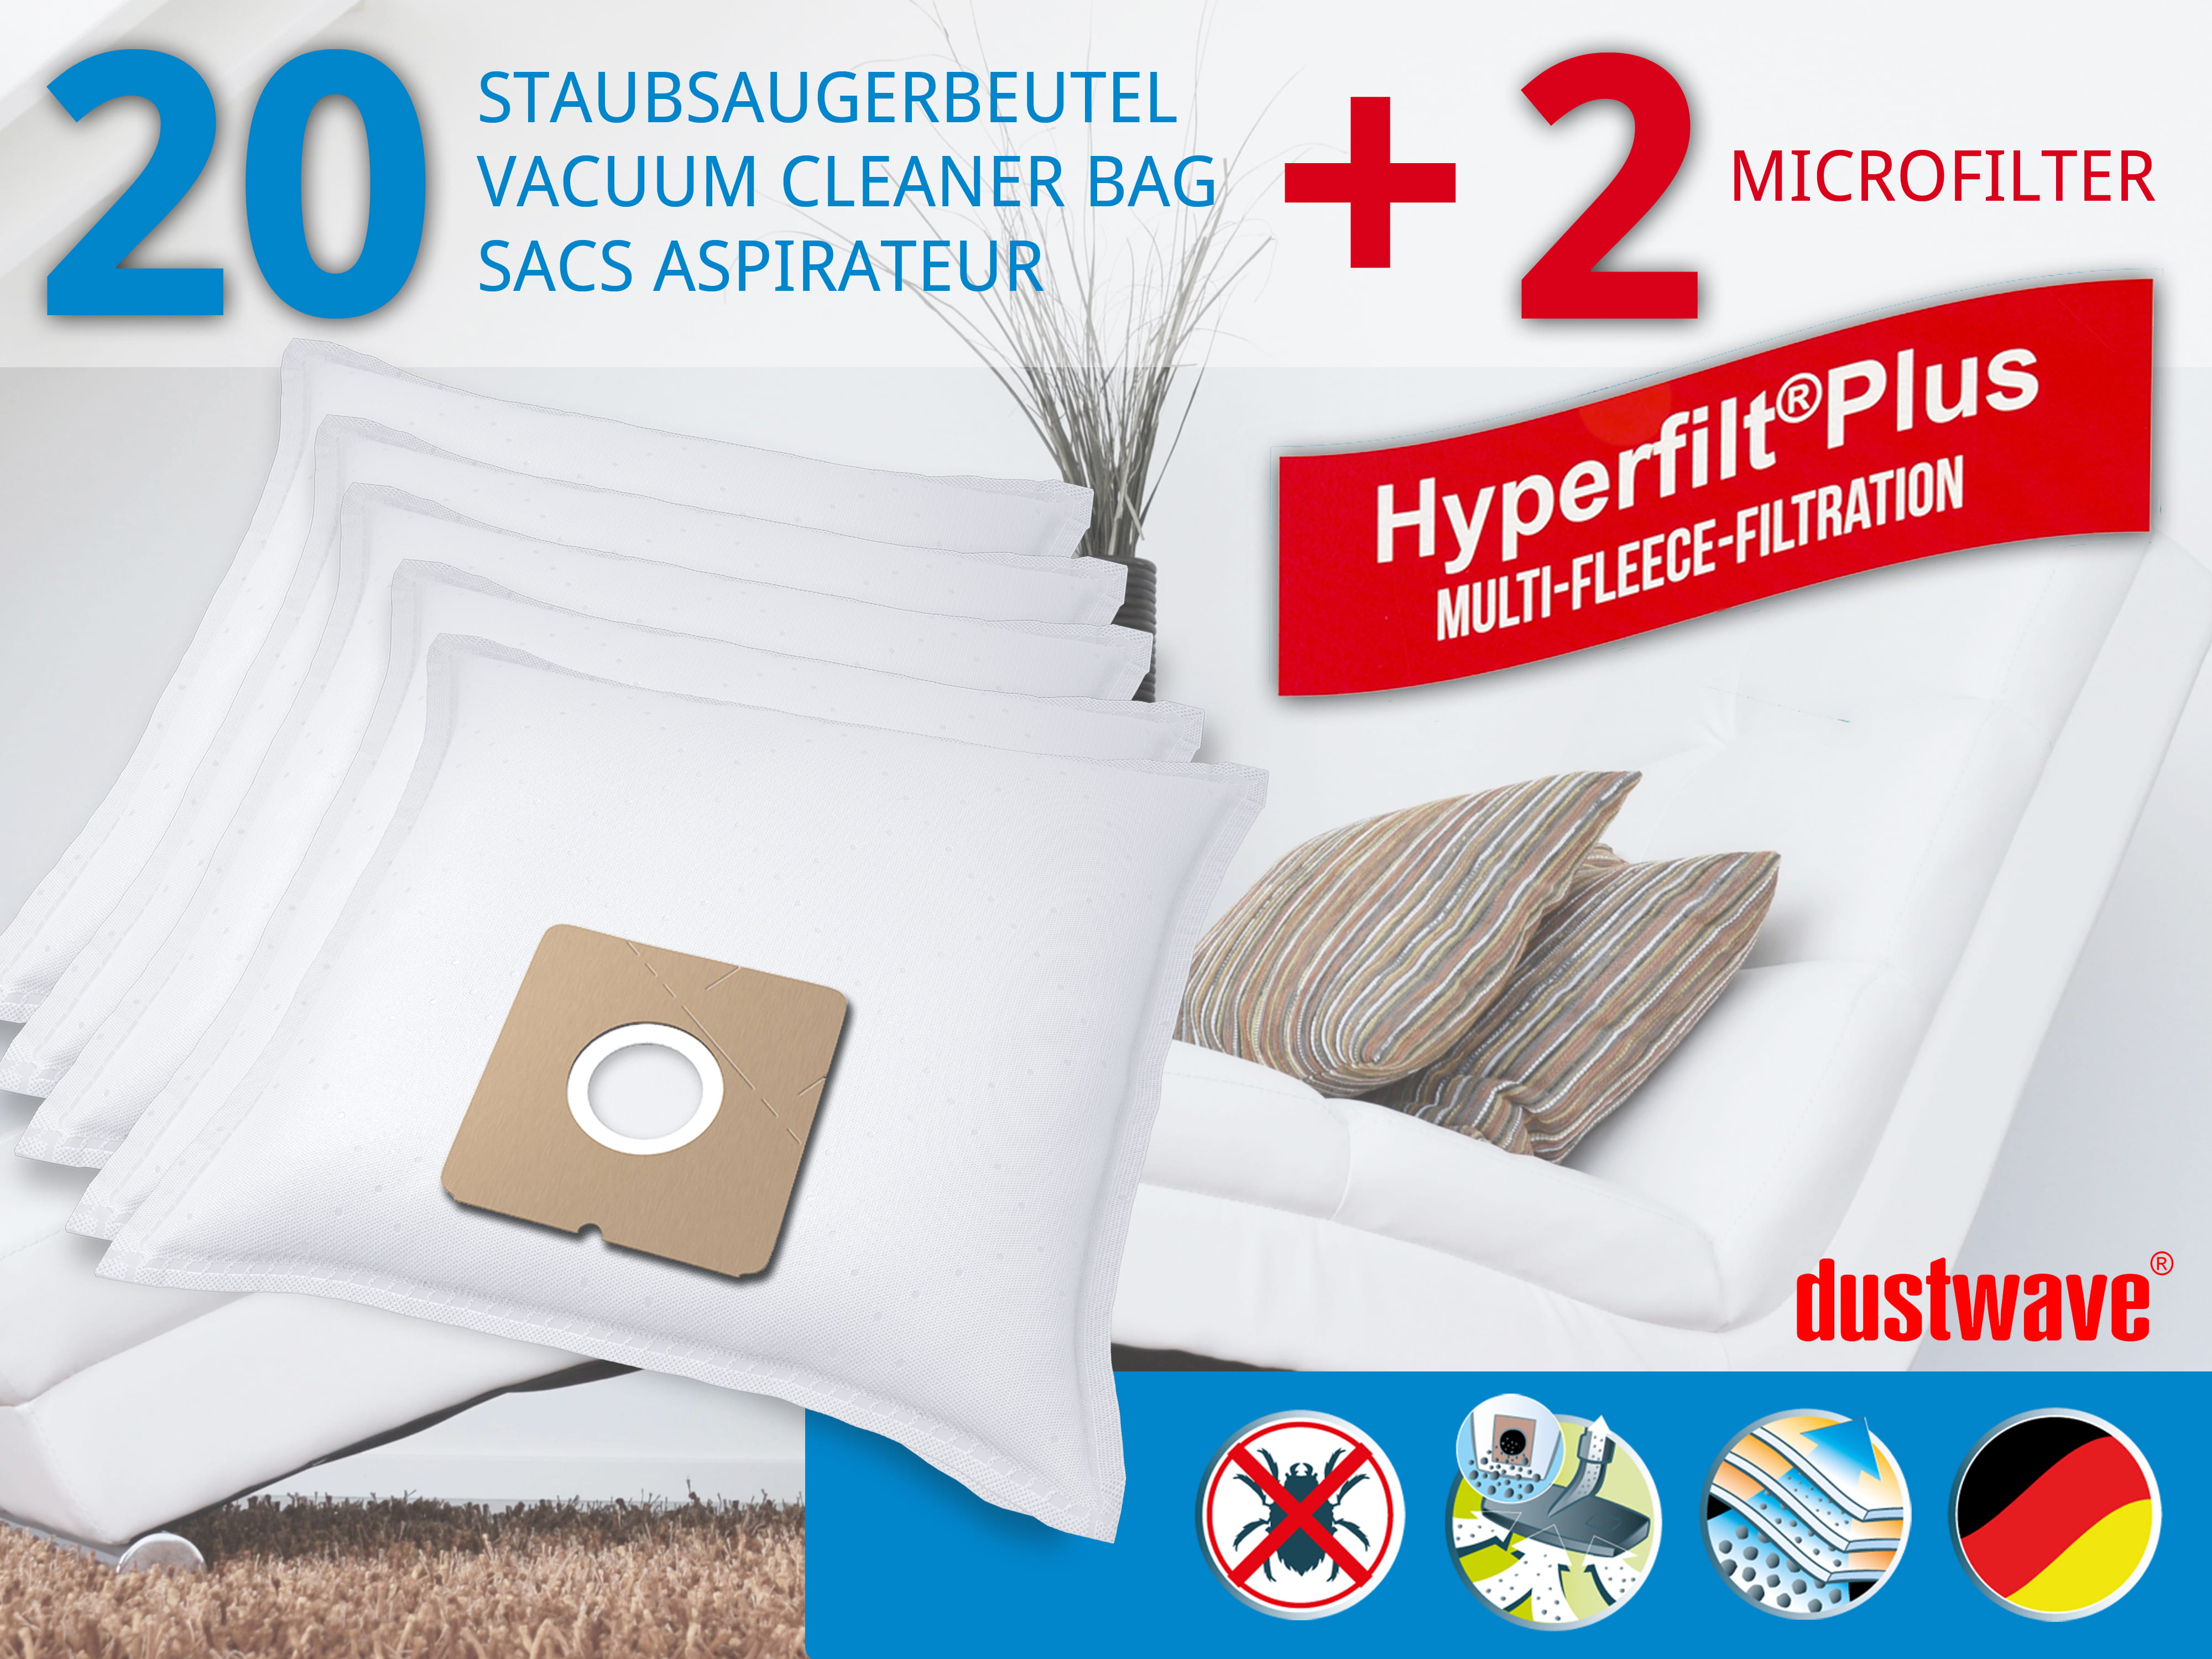 Dustwave® 20 Staubsaugerbeutel für Elekta EVC 1565 W - hocheffizient, mehrlagiges Mikrovlies mit Hygieneverschluss - Made in Germany